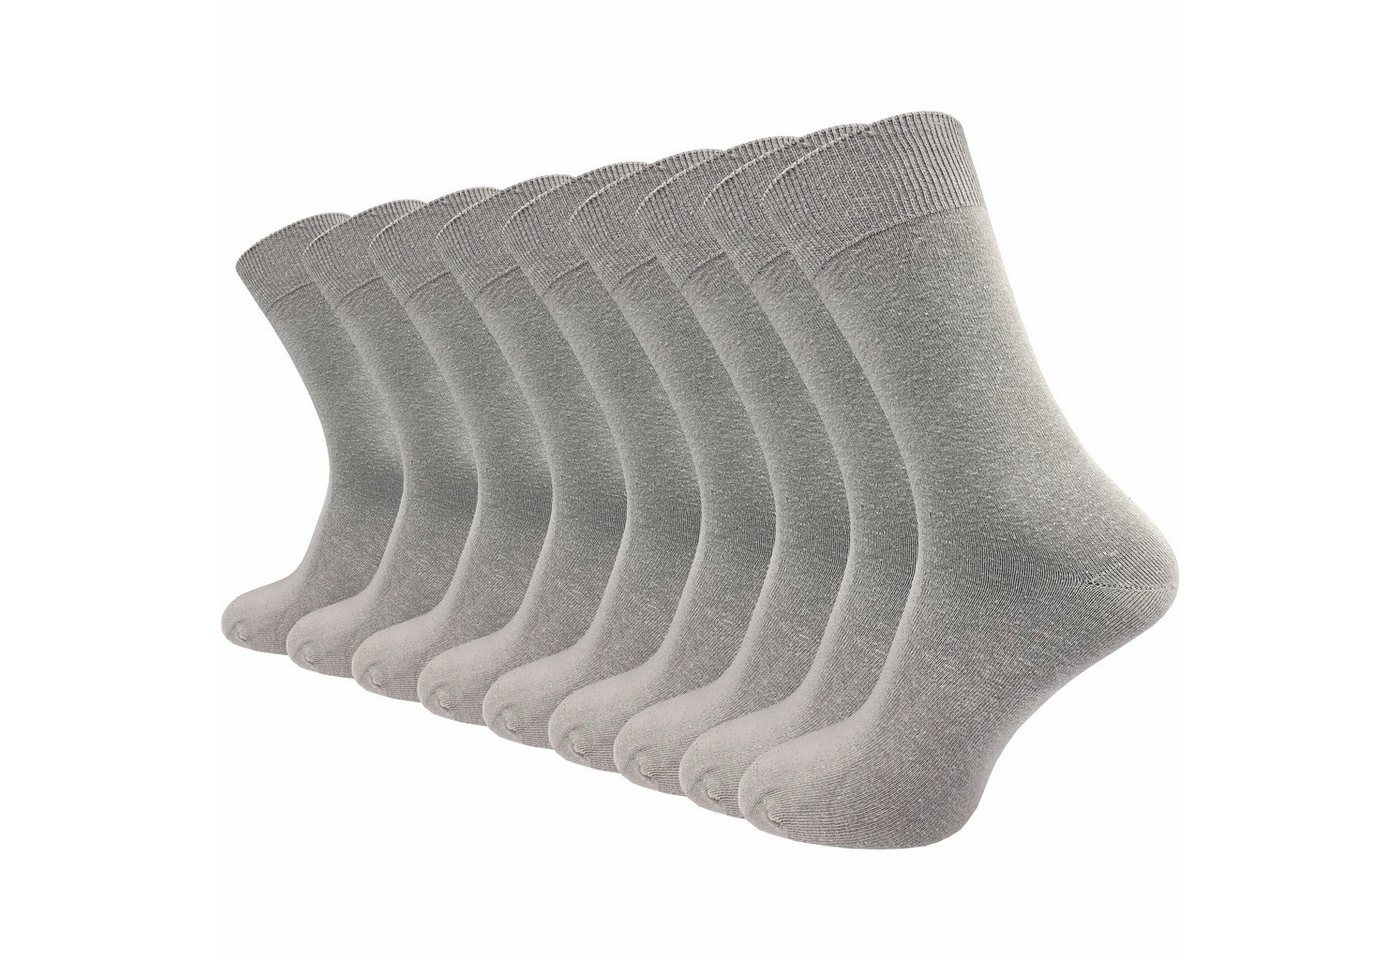 GAWILO Basicsocken für Damen & Herren - 80% hochwertige Baumwolle - mit Komfortbund (9 Paar) atmungsaktive, weiche Baumwolle - ohne Naht - in blau, grau & natur von GAWILO